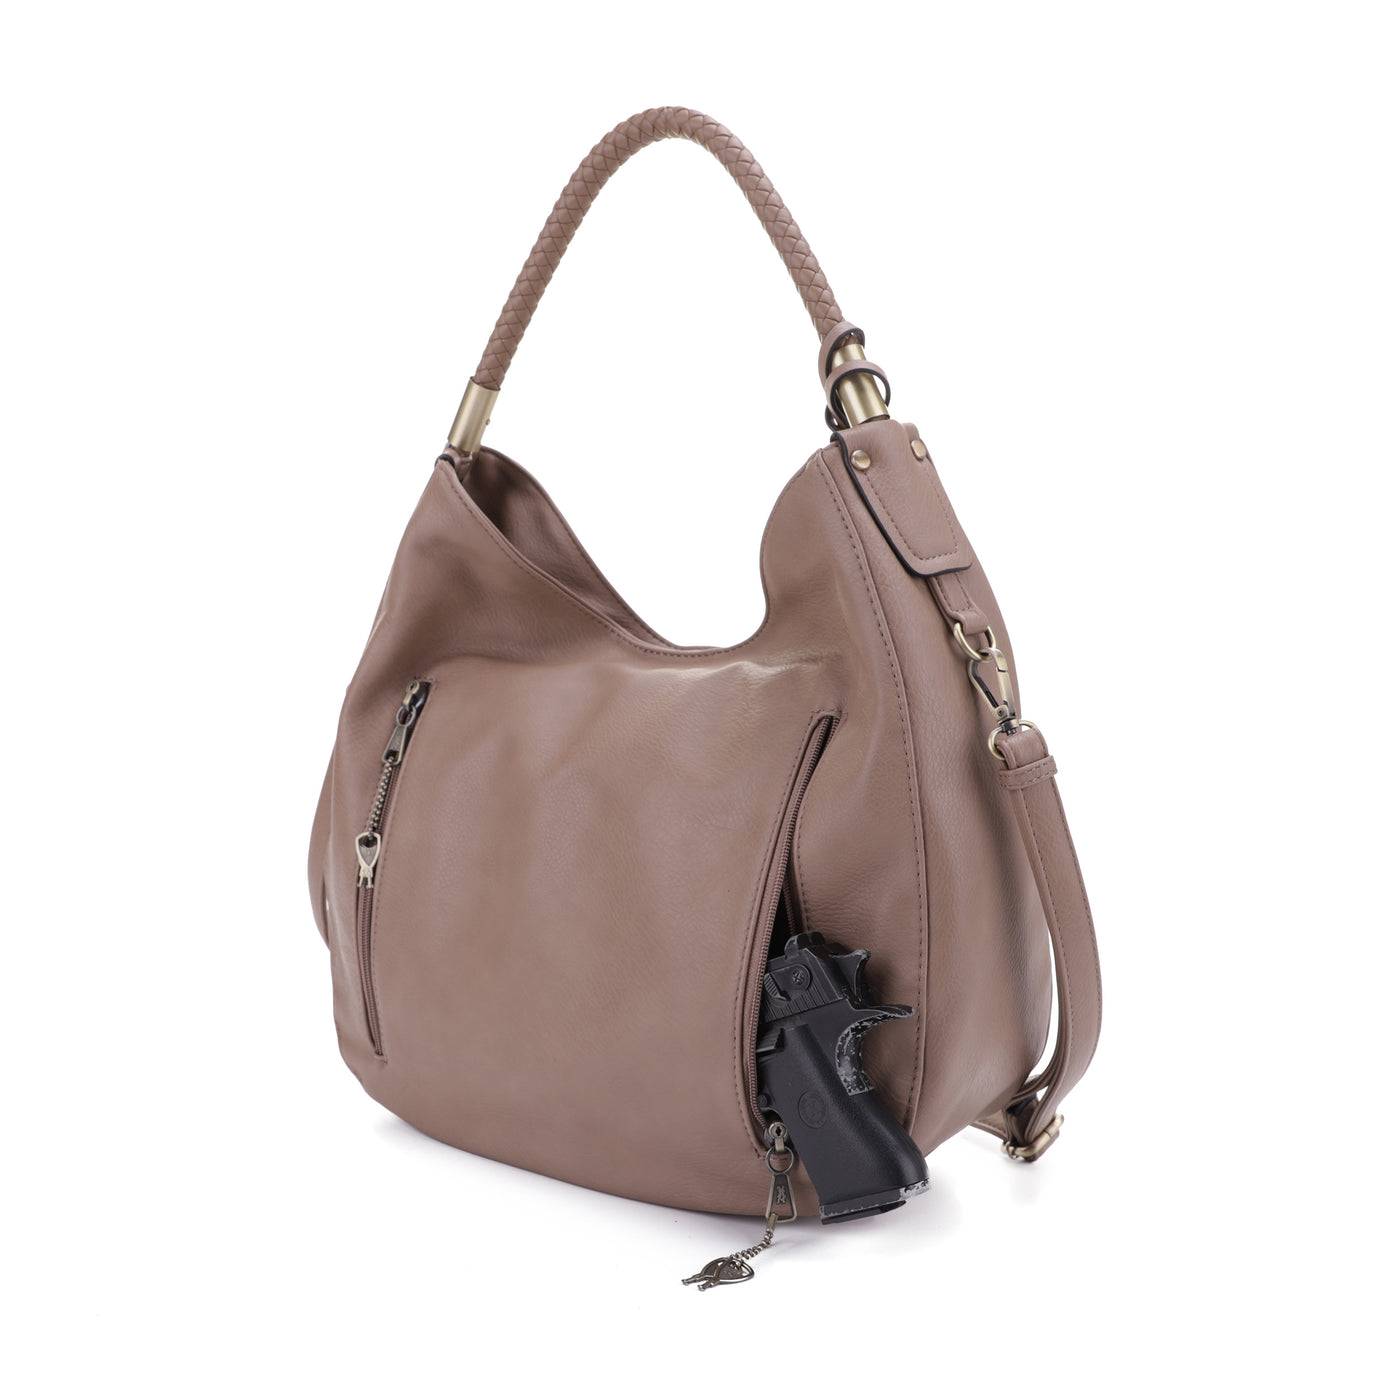 Sienna Concealed Carry Lock and Key Tassel Hobo Shoulder Bag